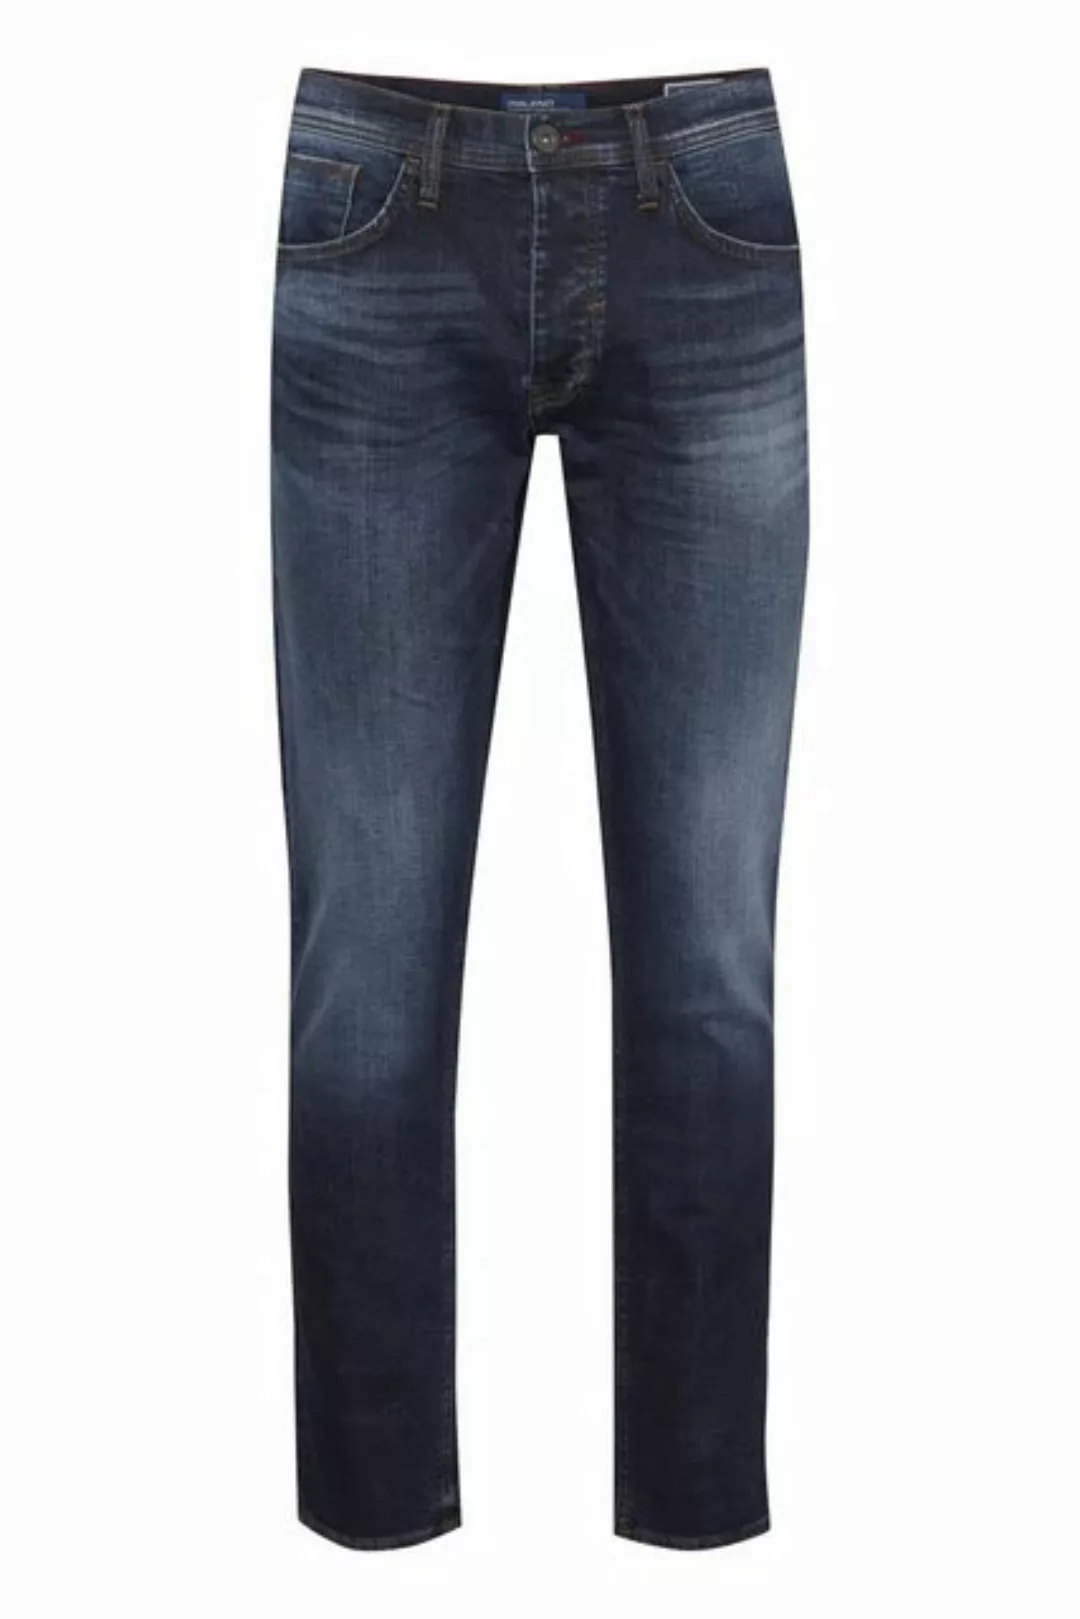 Blend 5-Pocket-Jeans BLEND JEANS BLIZZARD denim middle blue rinse washed 20 günstig online kaufen